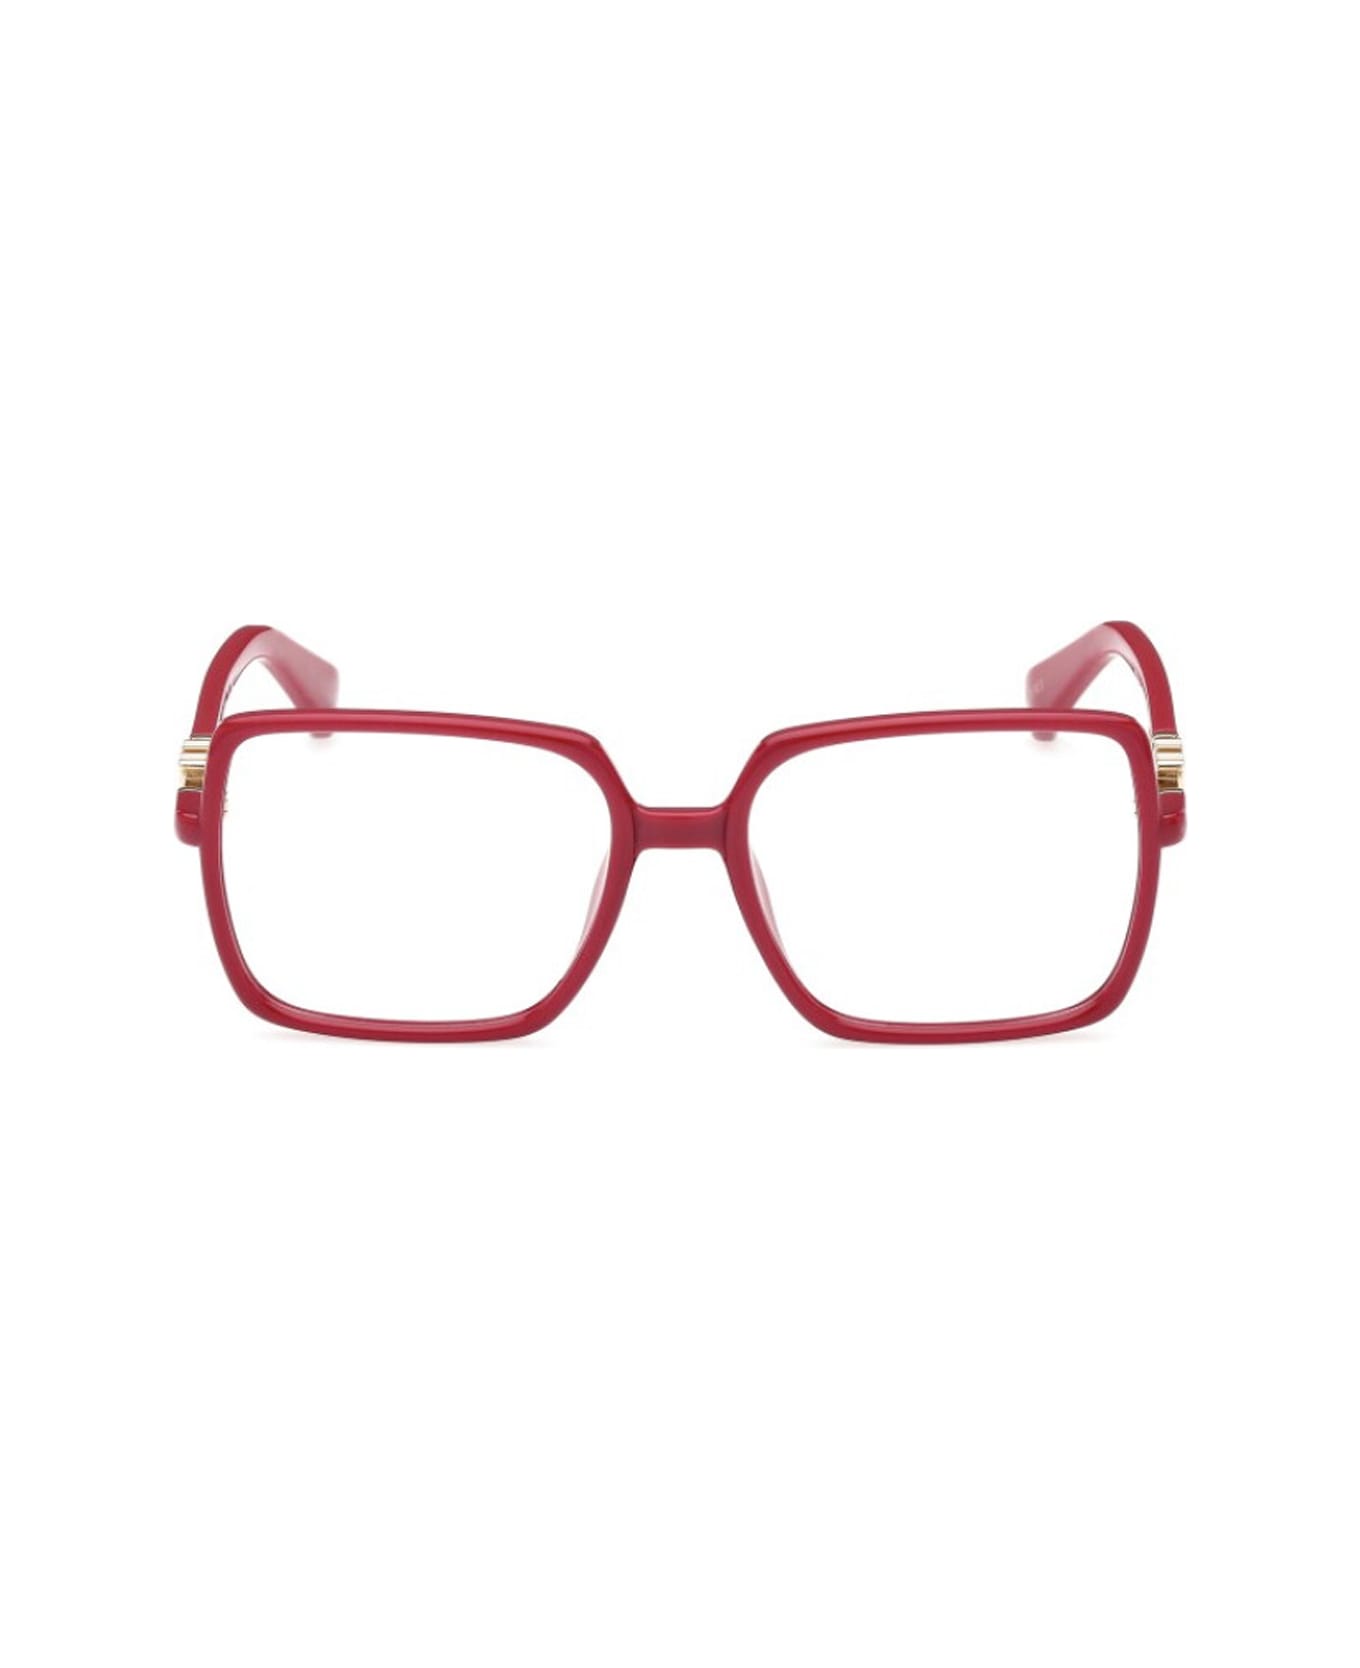 Max Mara Mm5108 075 Glasses - Rosso